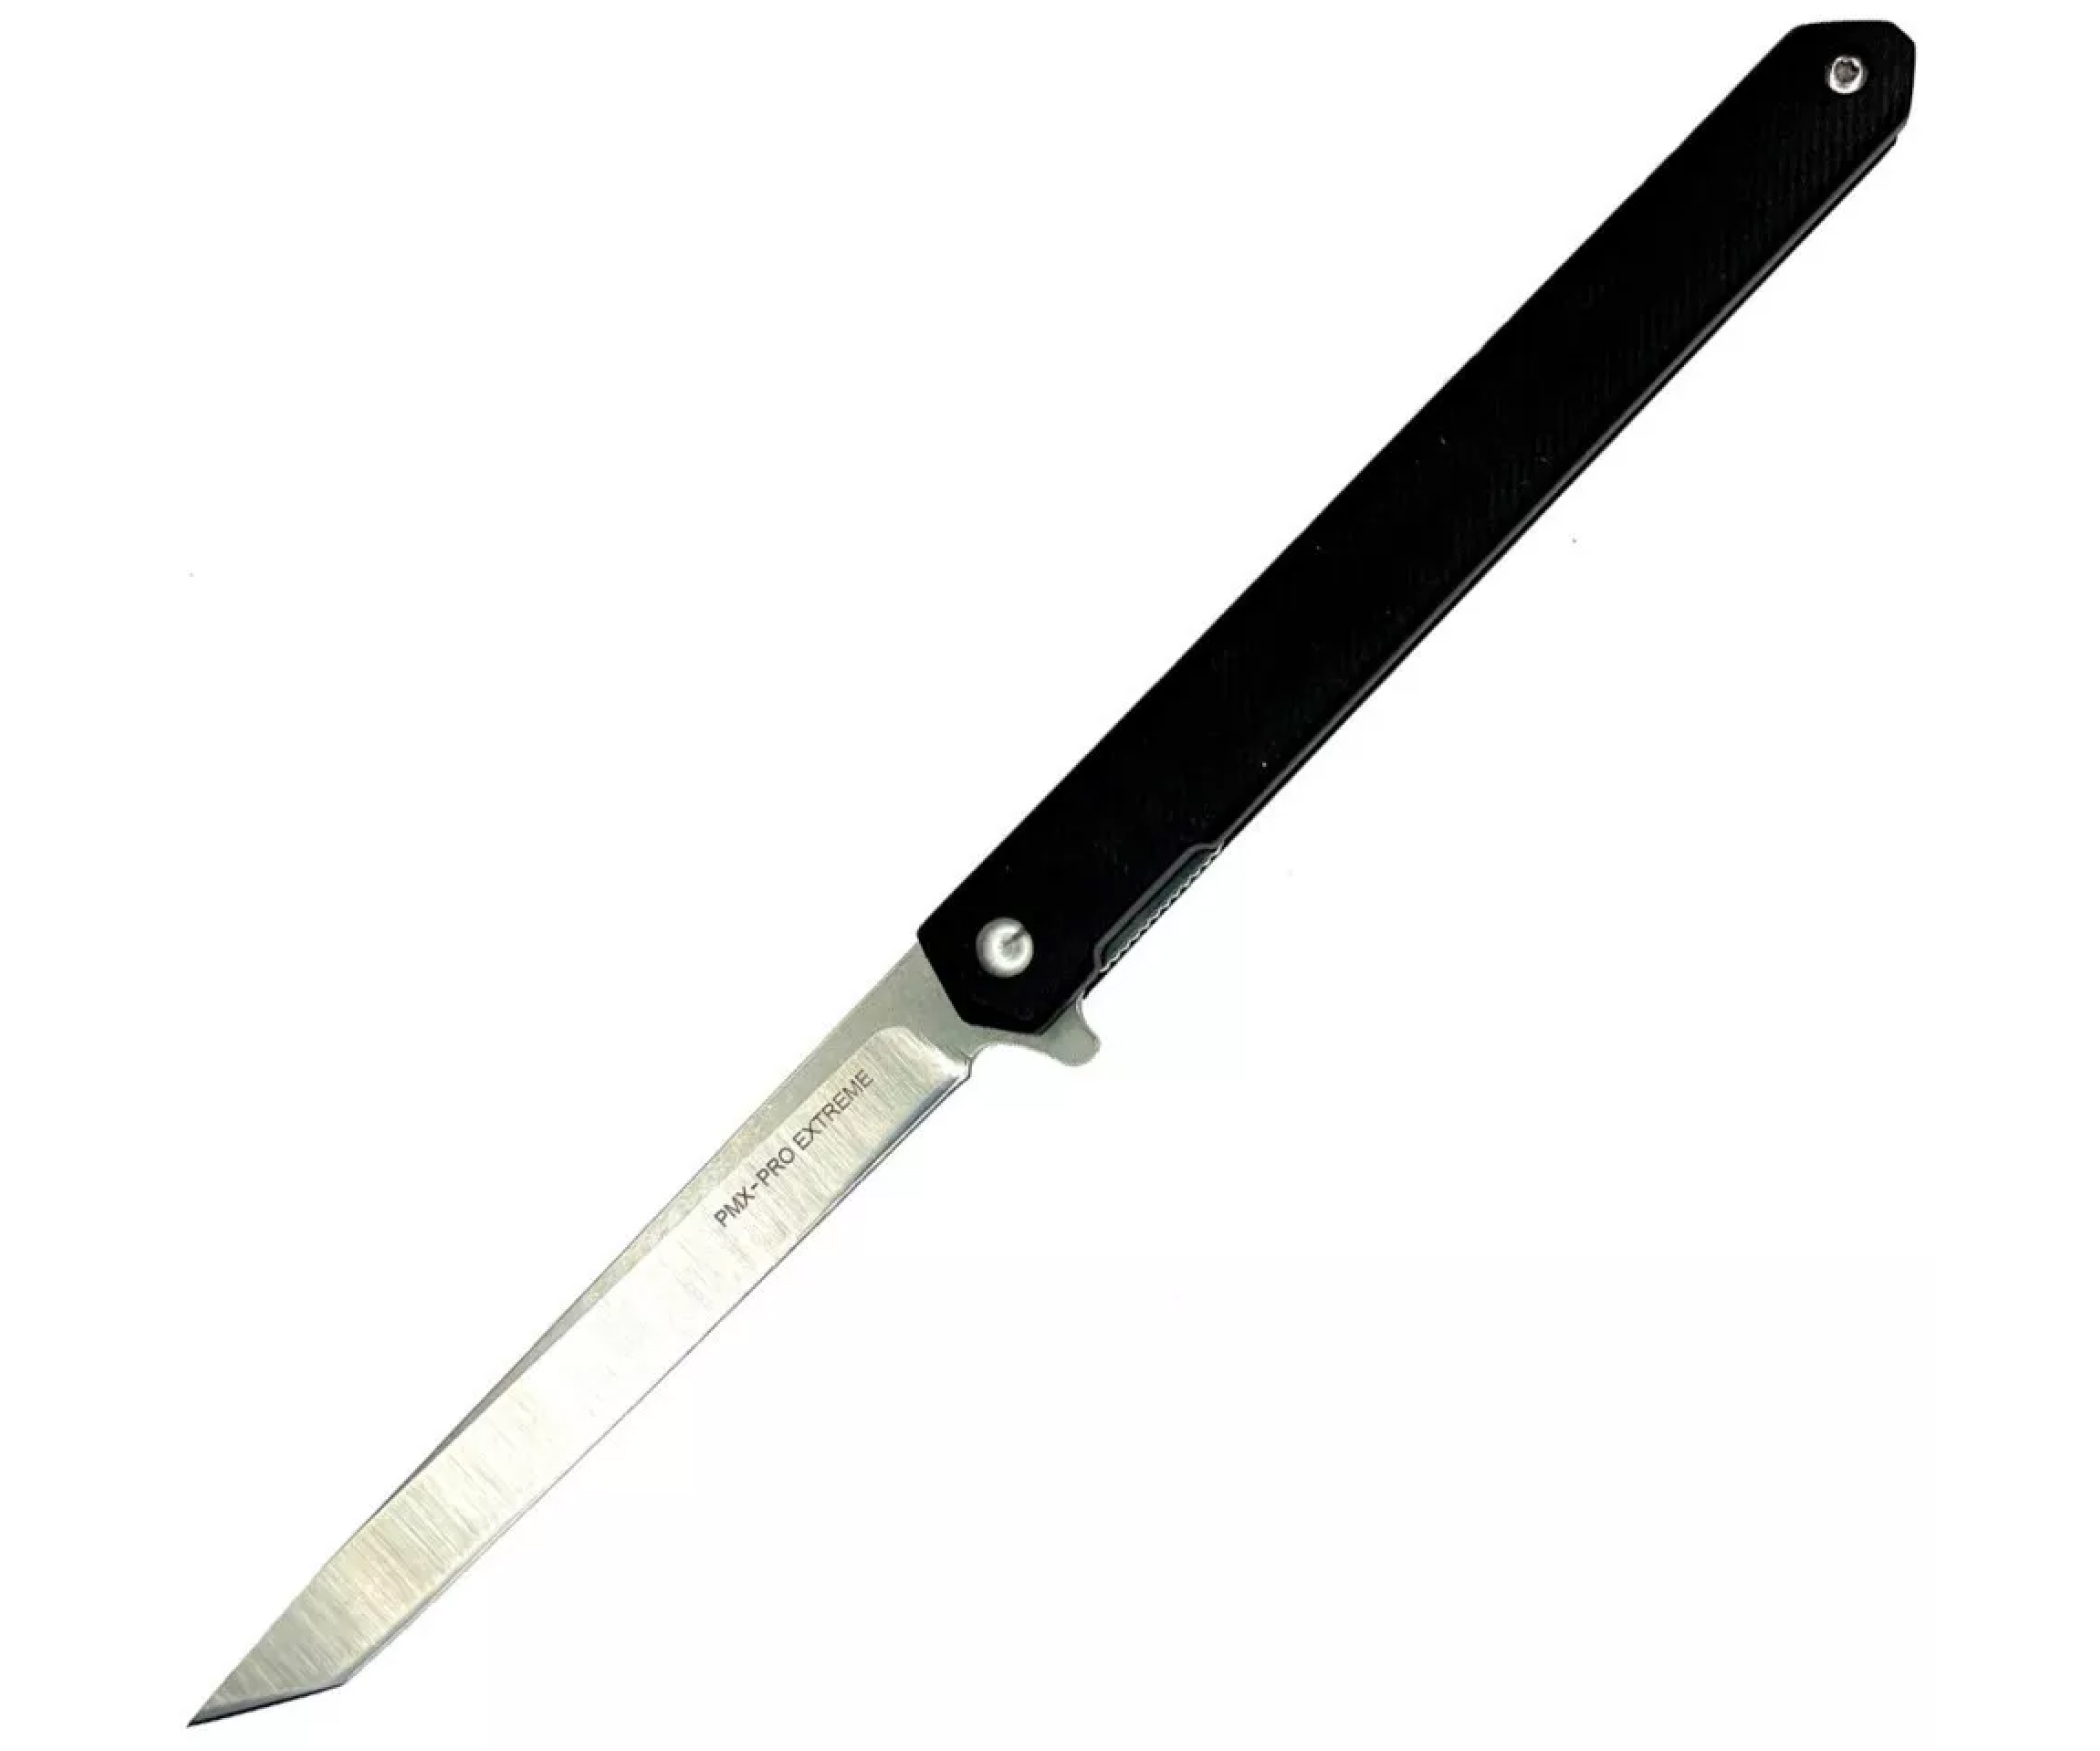 Купить нож в томске. PMX Pro extreme нож складной. Мультитул нож PMX-Pro extreme Special Series PMX-022b. Нож складной с открывалкой лезвие 7см рукоять 10см черный.